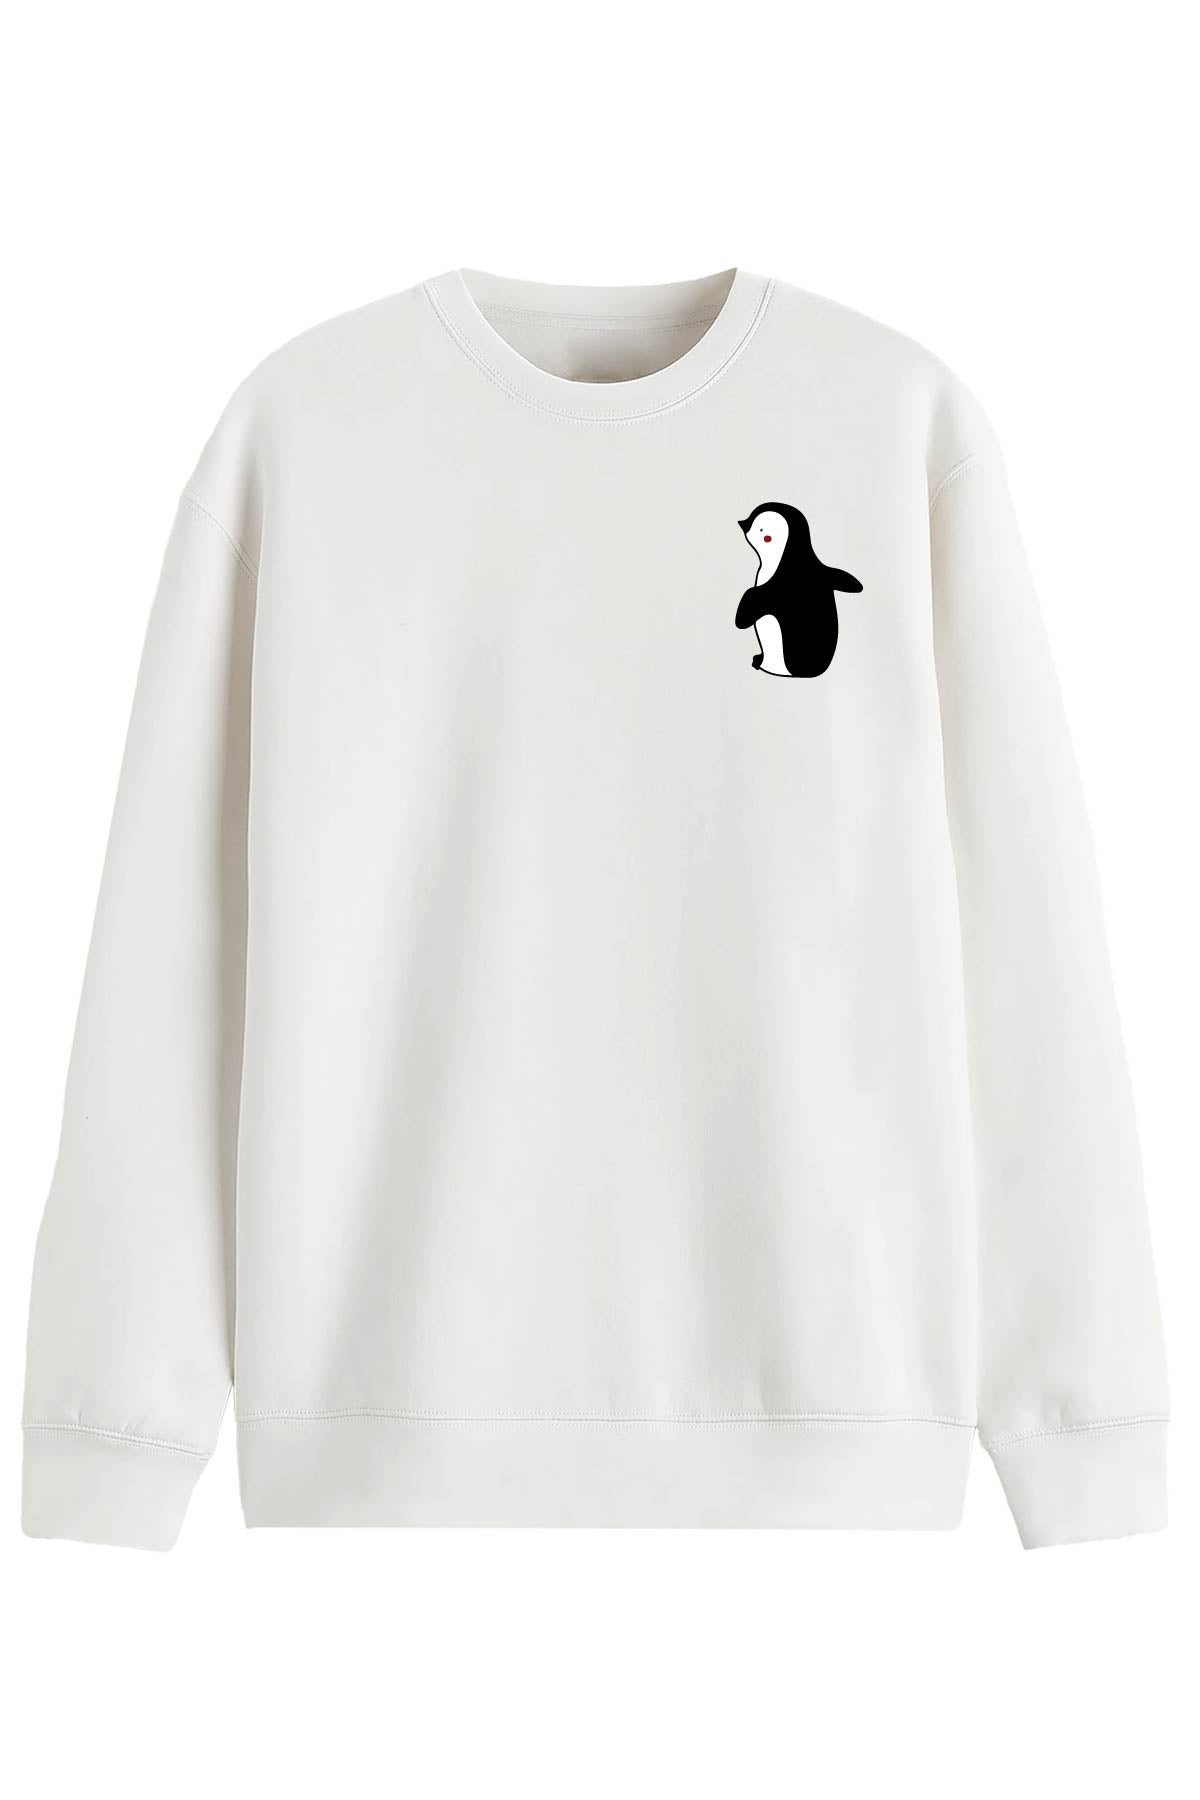 Penguin Love 2-  Sweatshirt